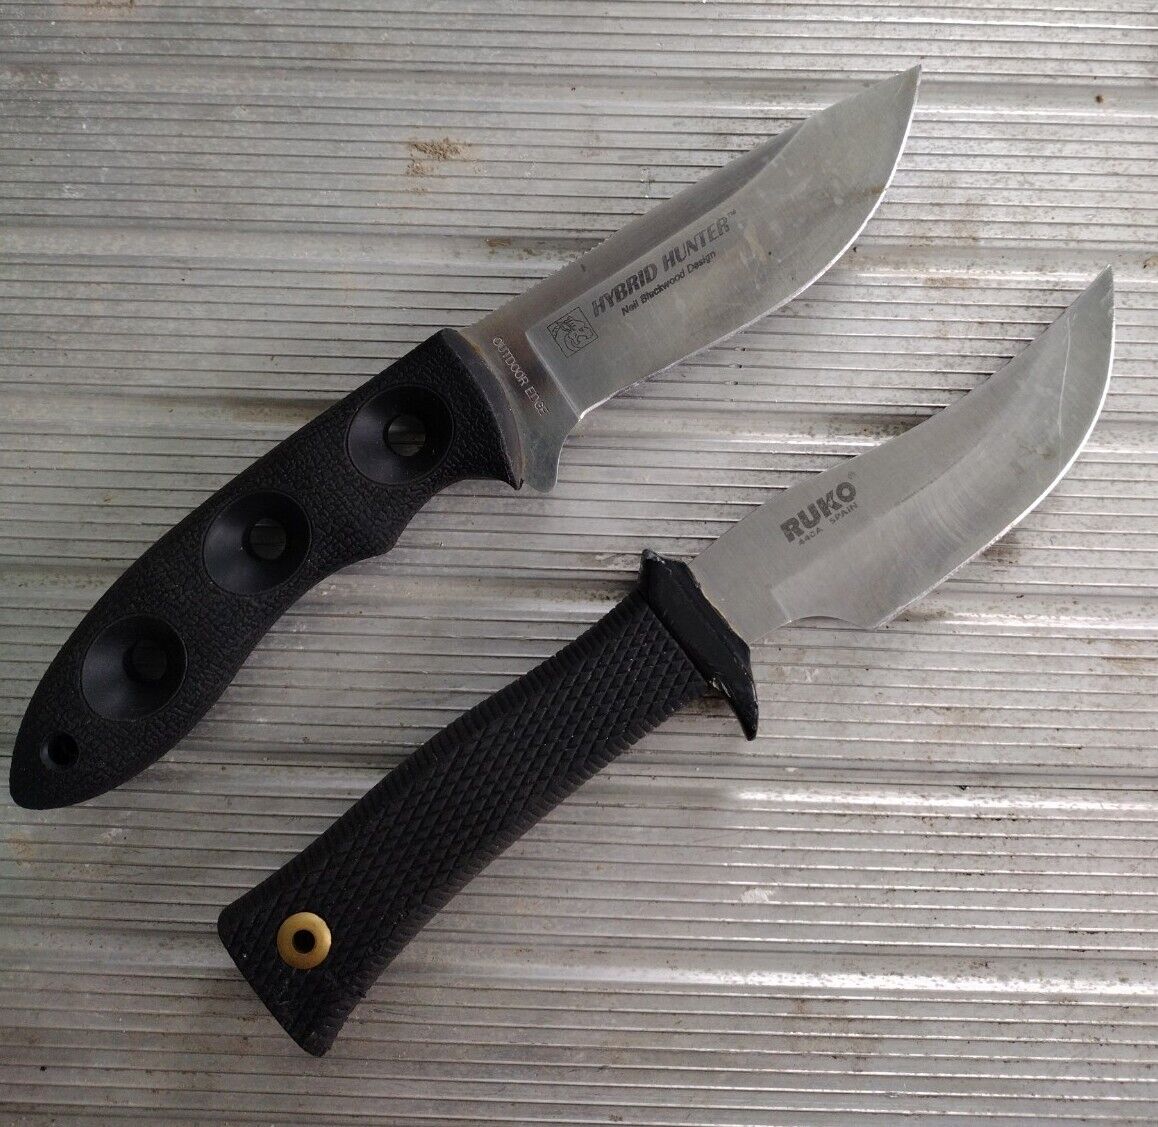 ROKU KNIFE/HYBRID HUNTER KNIFE